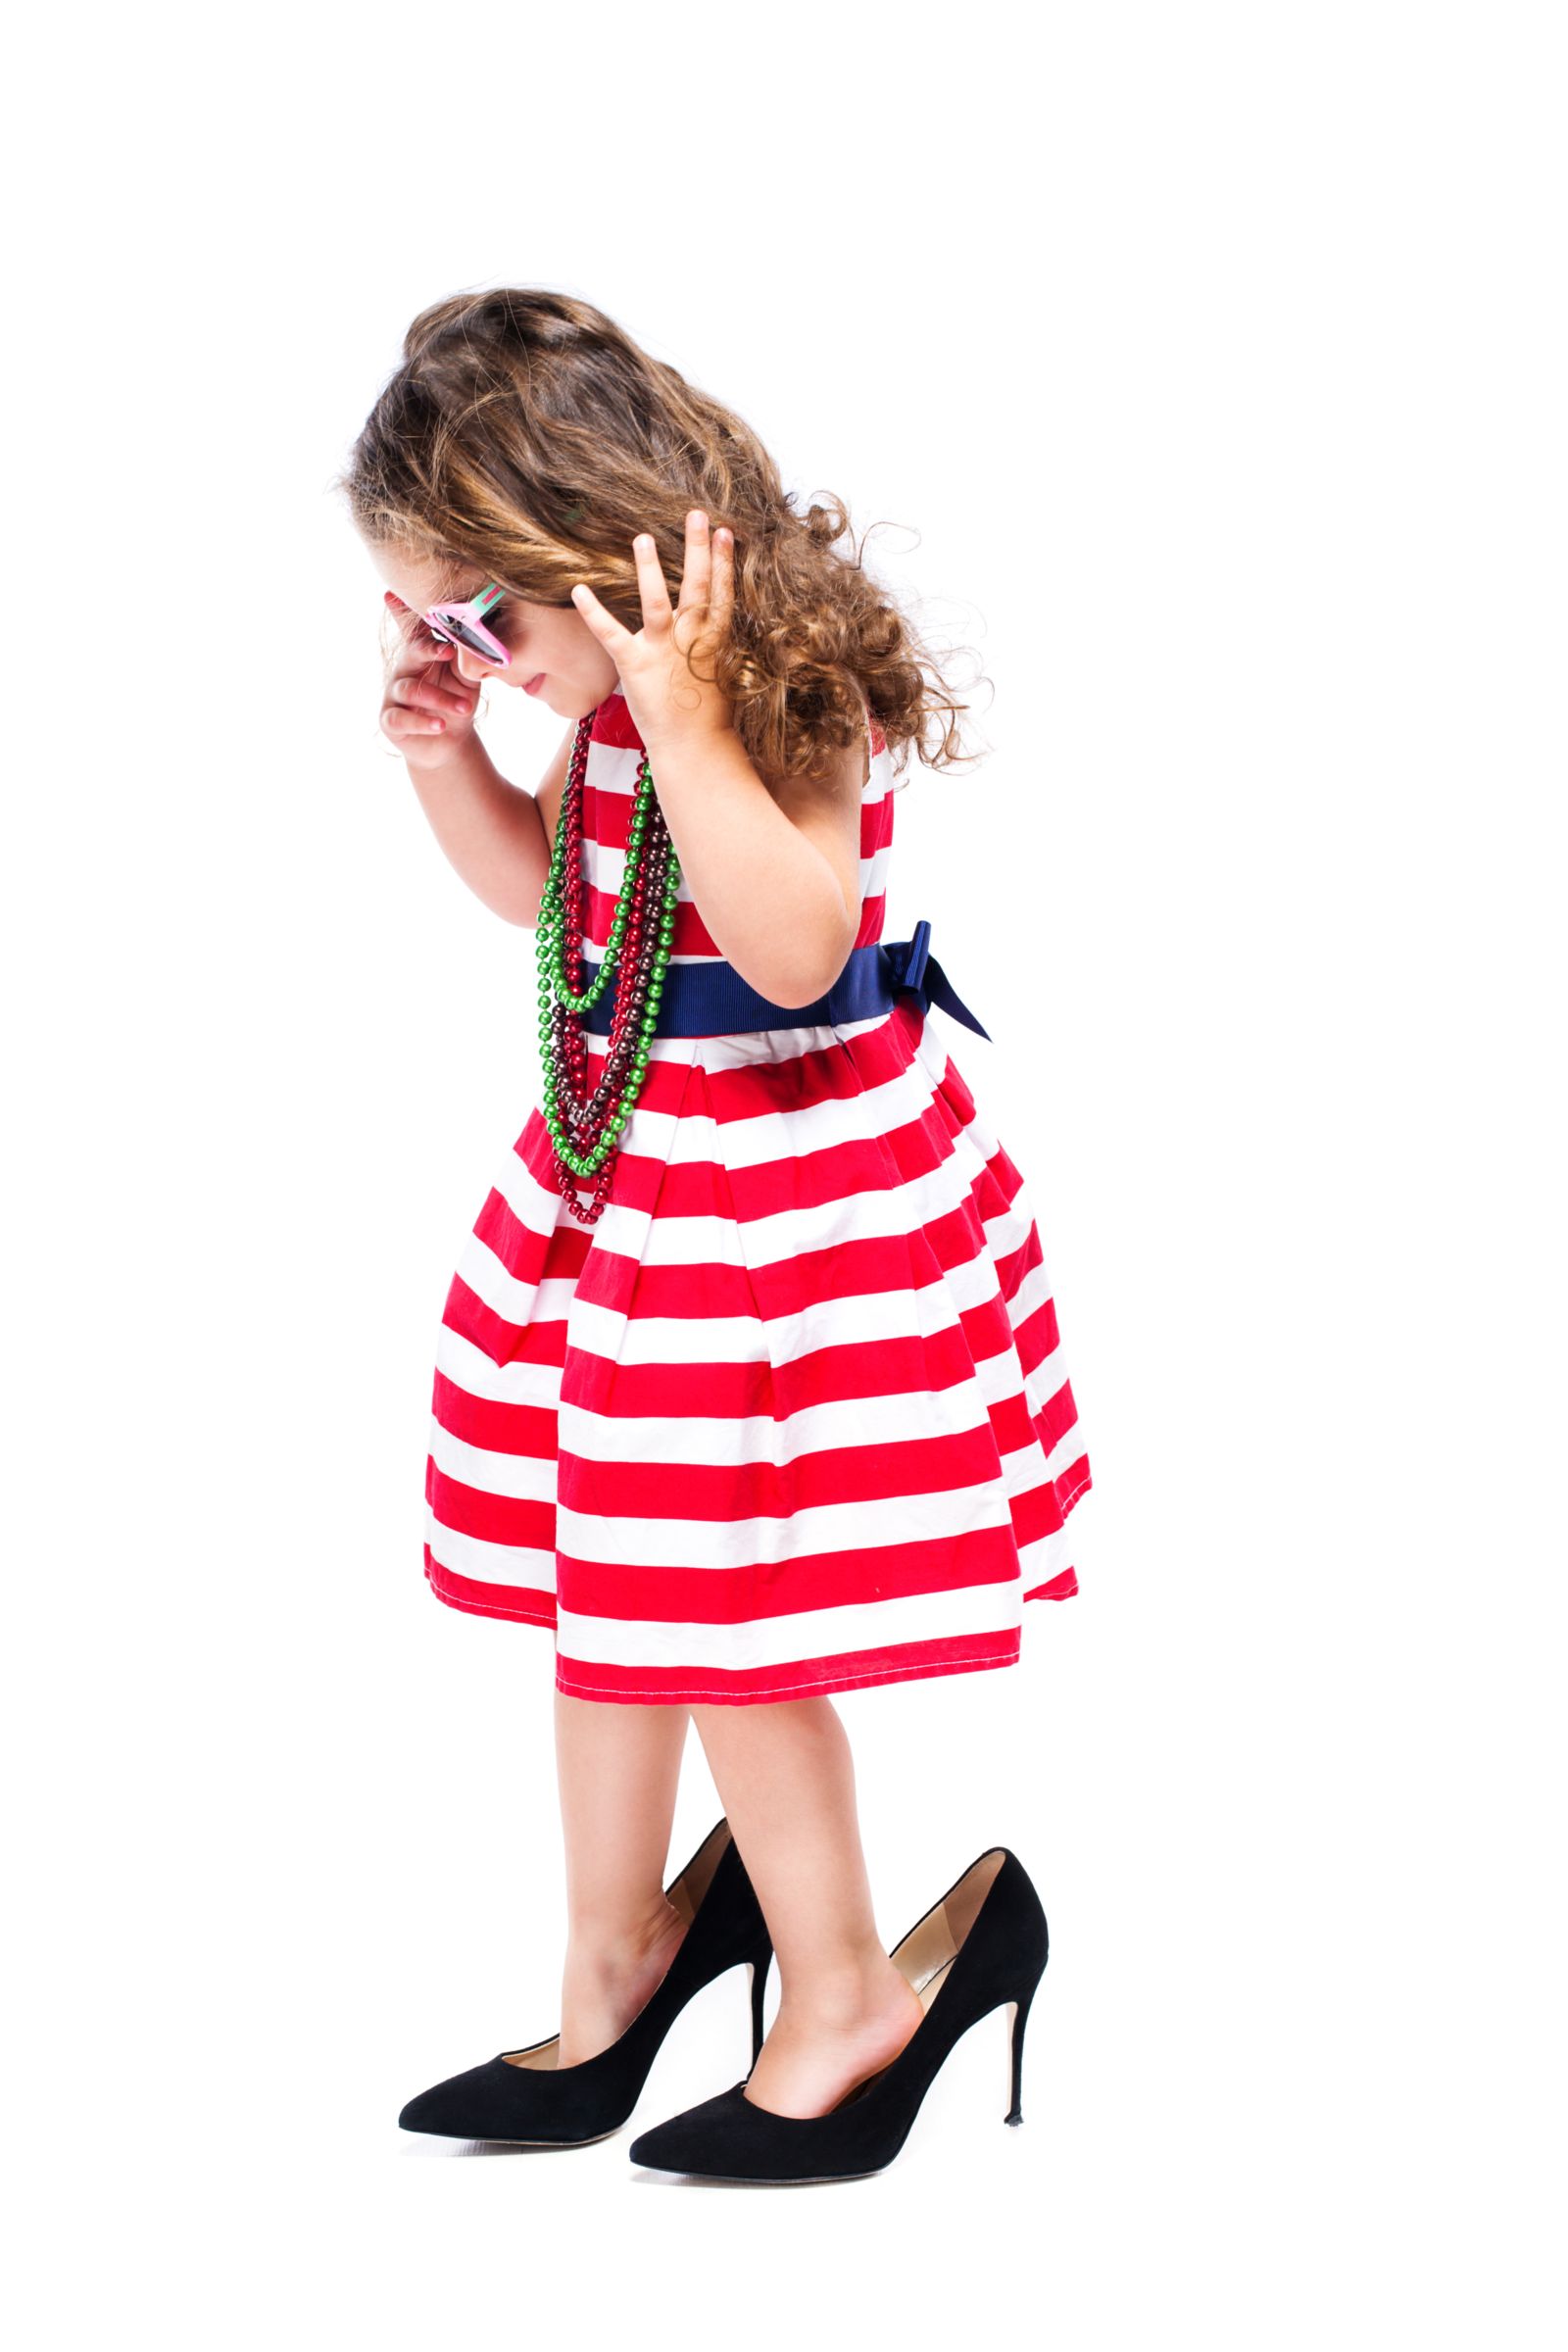 little girl wearing high heels